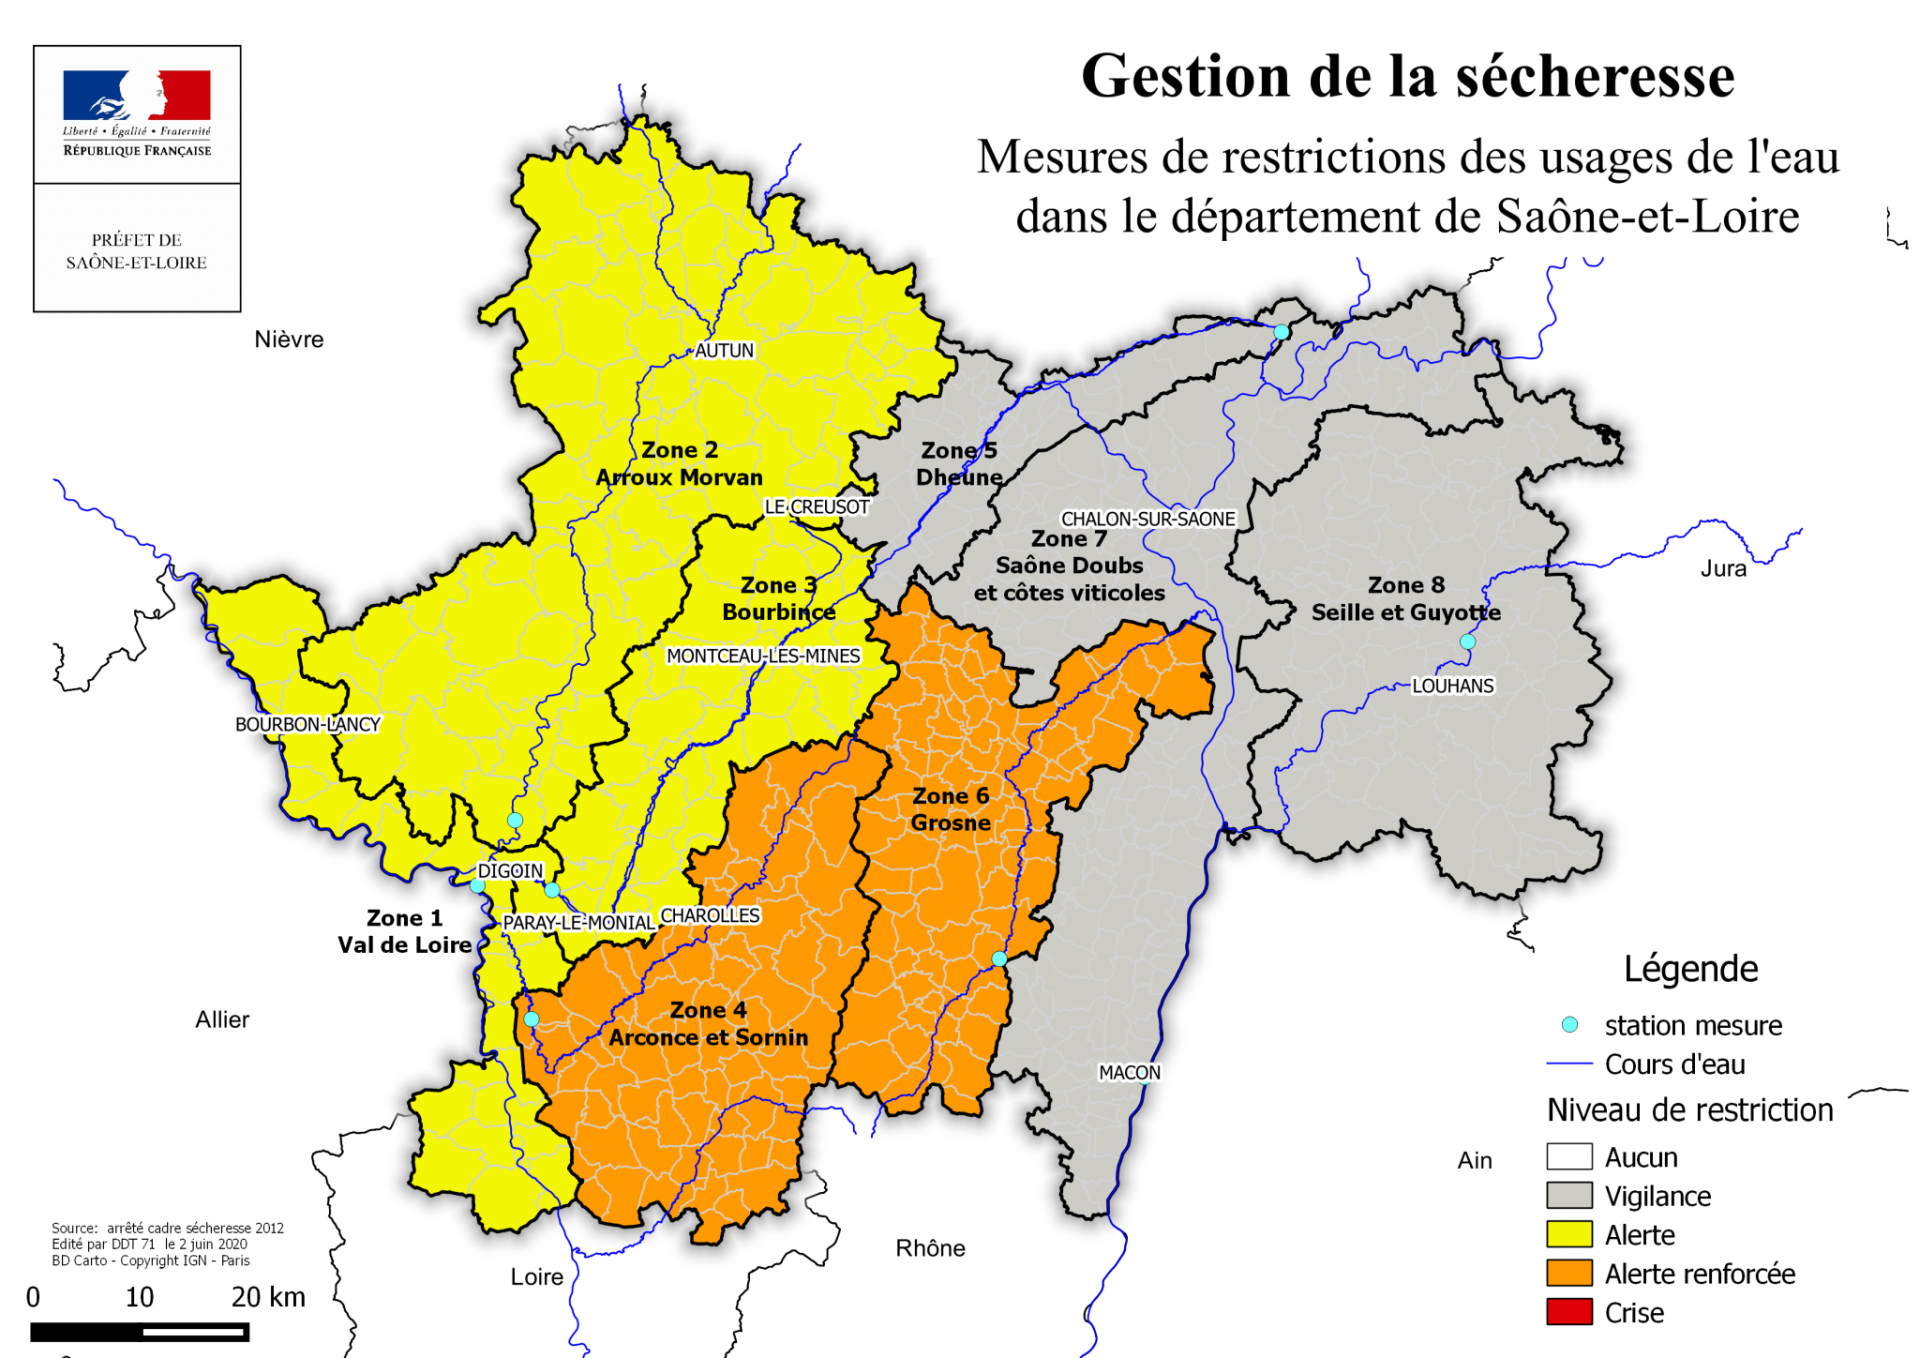 La sécheresse estivale se confirme en Saône-et-Loire